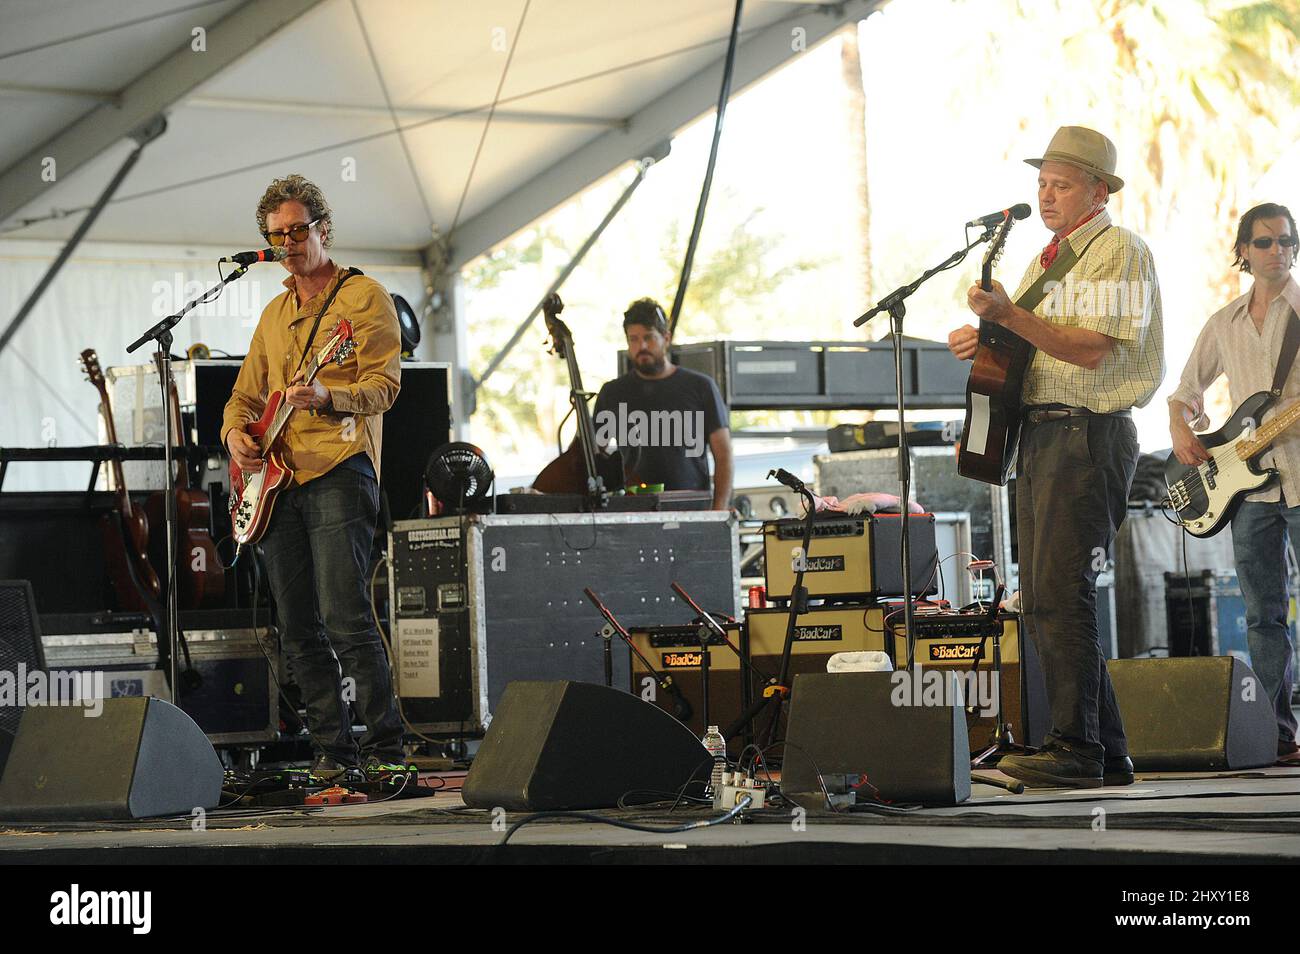 Les Jayhawks se sont déroulés en direct pendant le Stagecoach Country Music Festival de 2012 qui s'est tenu à Indio en Californie, aux États-Unis. Banque D'Images